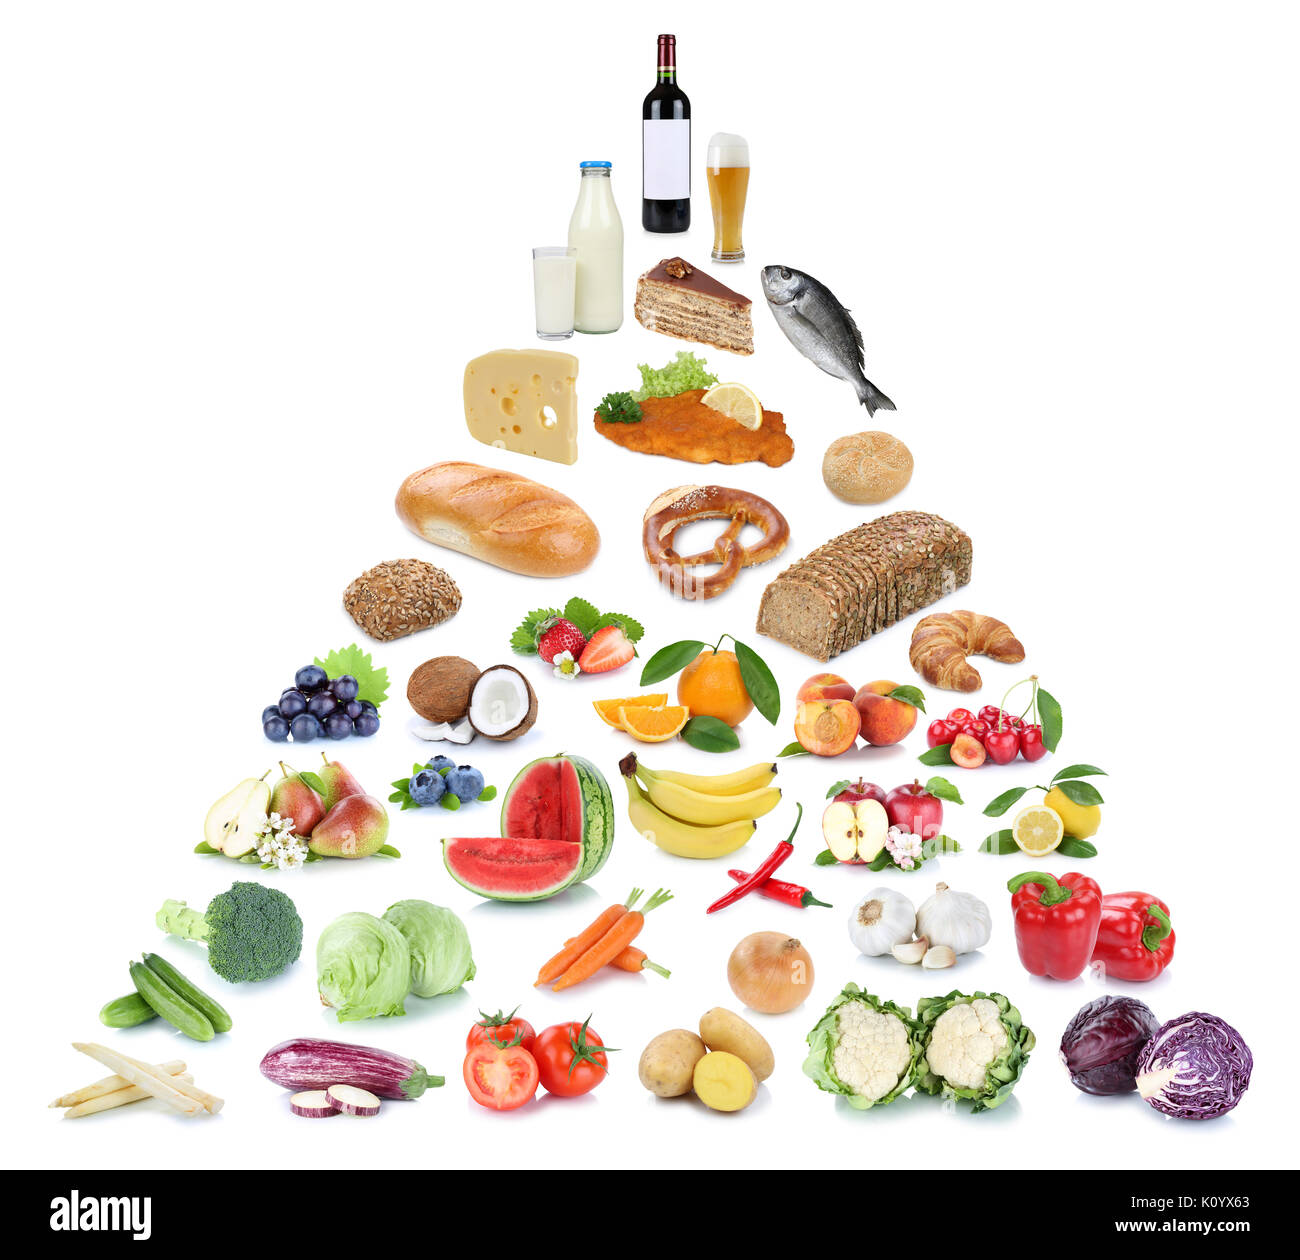 Lebensmittelpyramide gesunde Ernährung Obst und Gemüse Obst Collage auf weißem Hintergrund Stockfoto